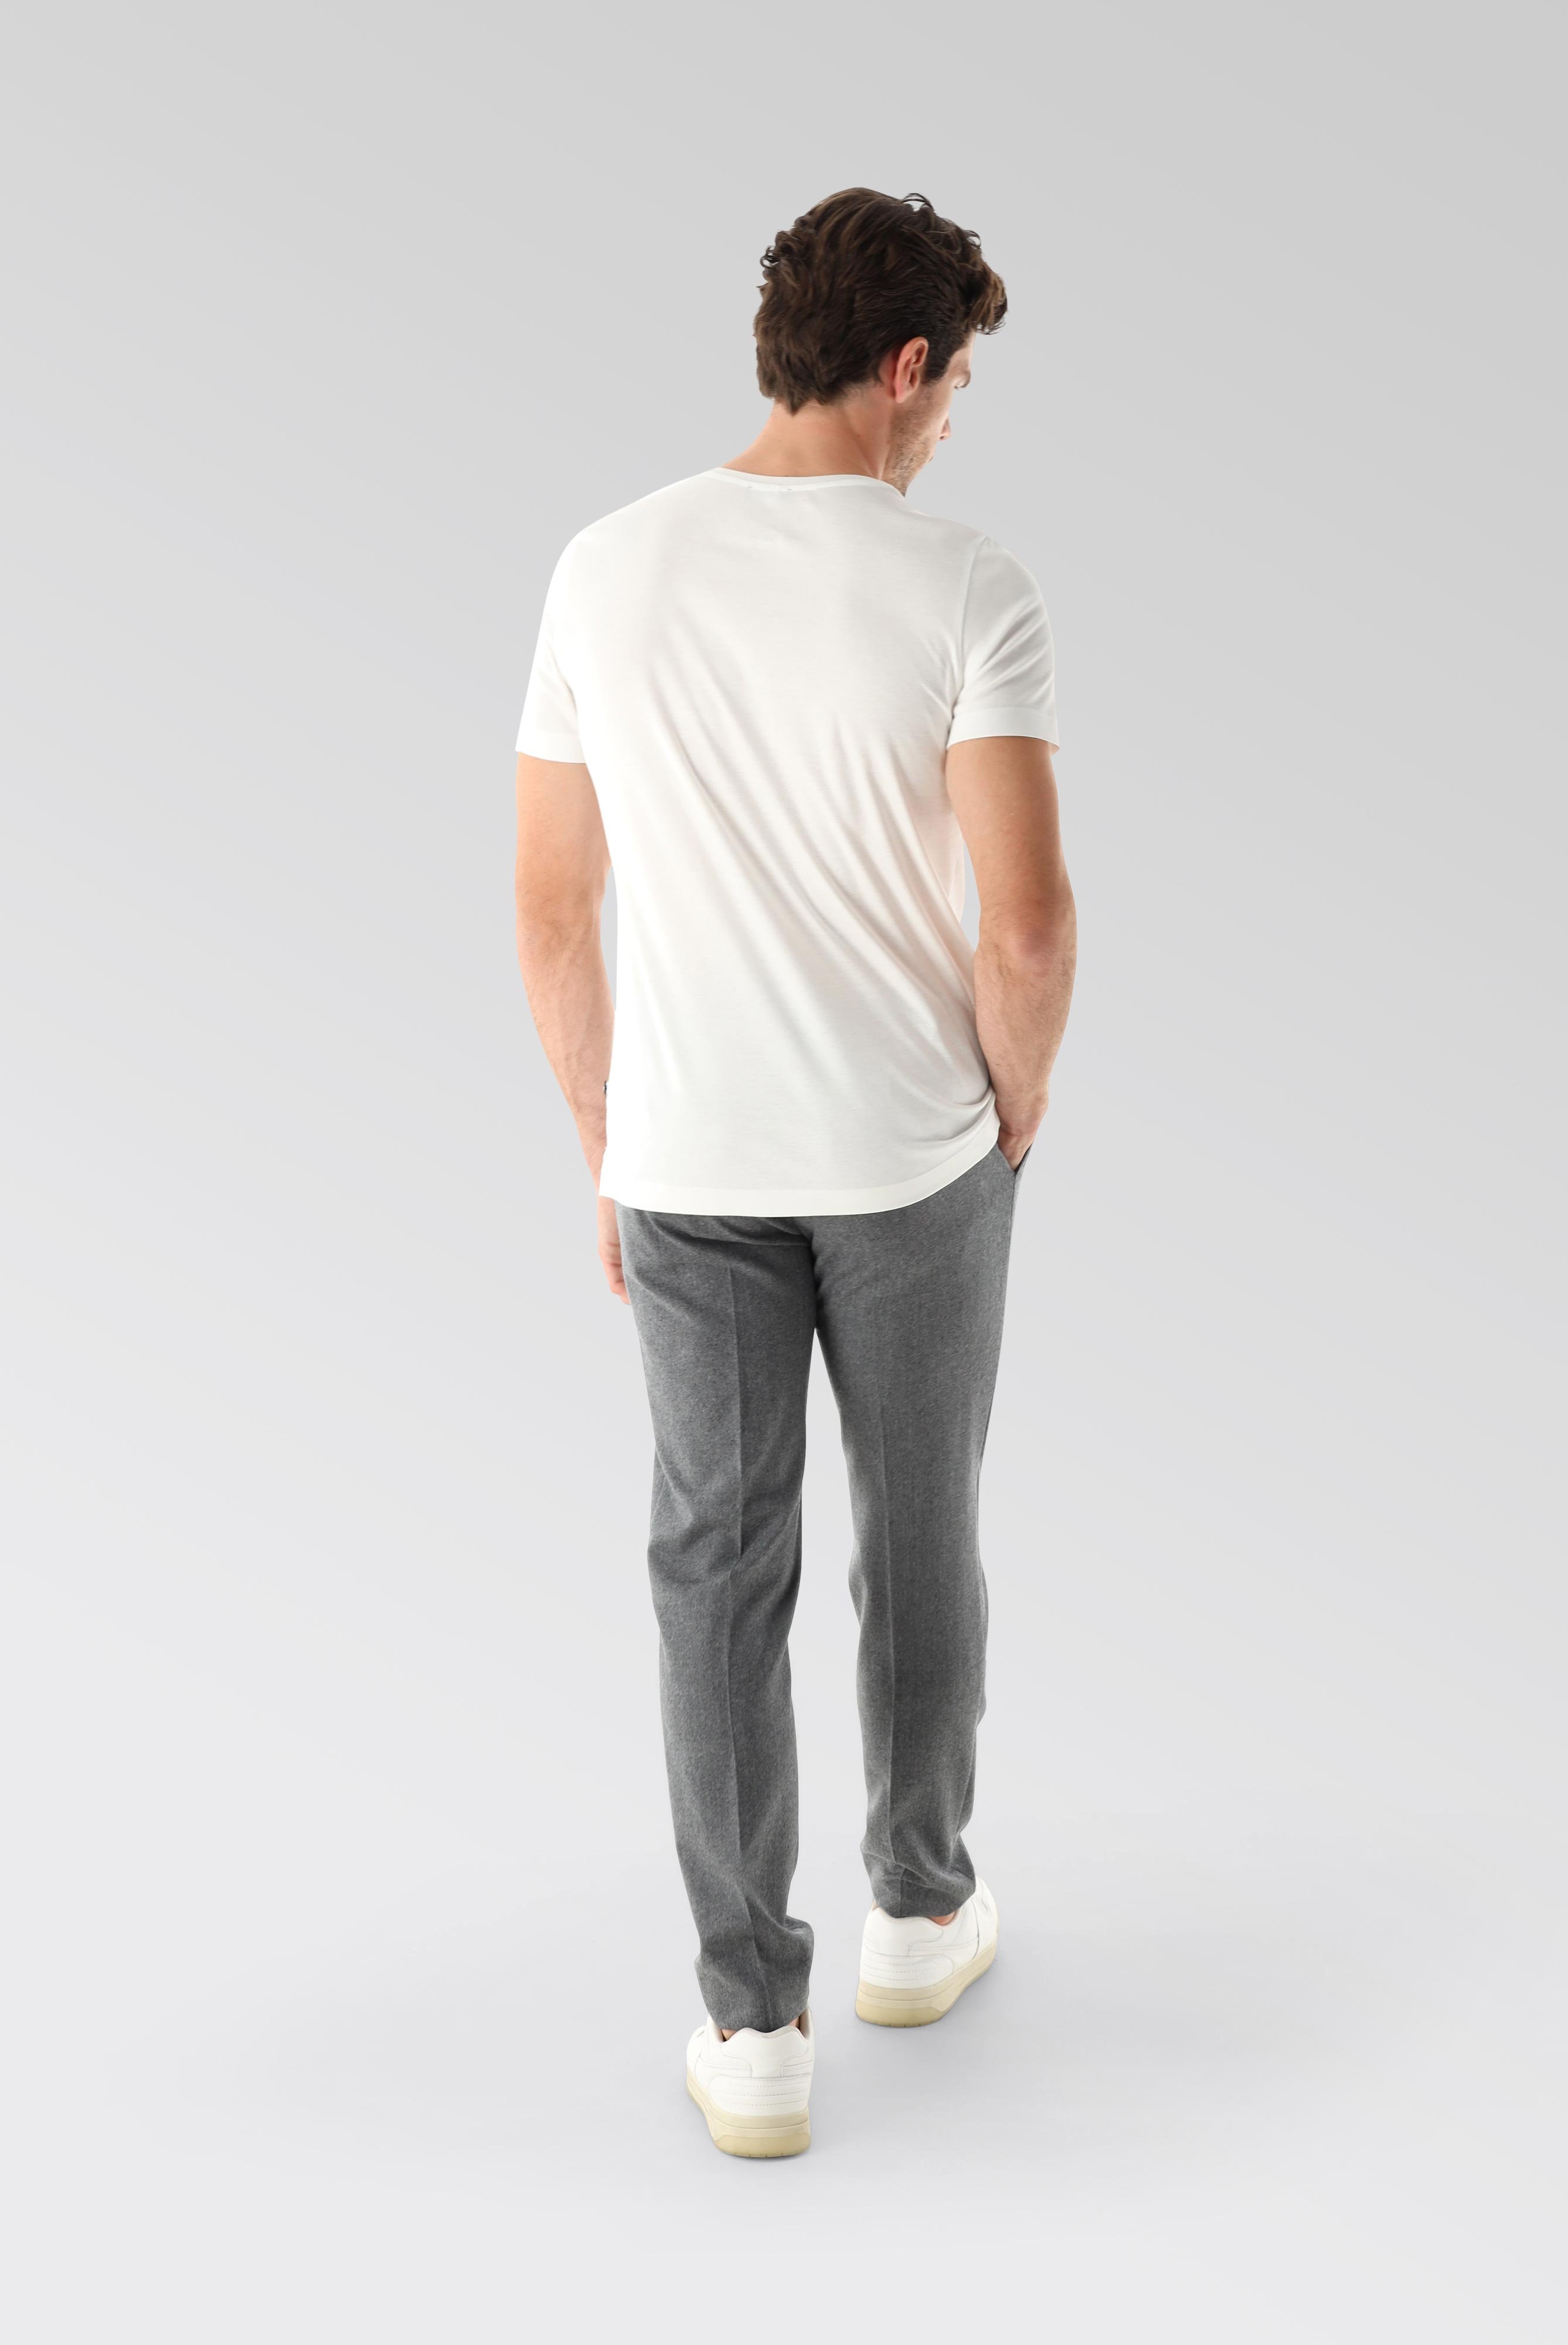 T-Shirts+V-Ausschnitt Jersey T-Shirt Slim Fit+20.1715.UX.180031.000.XXL